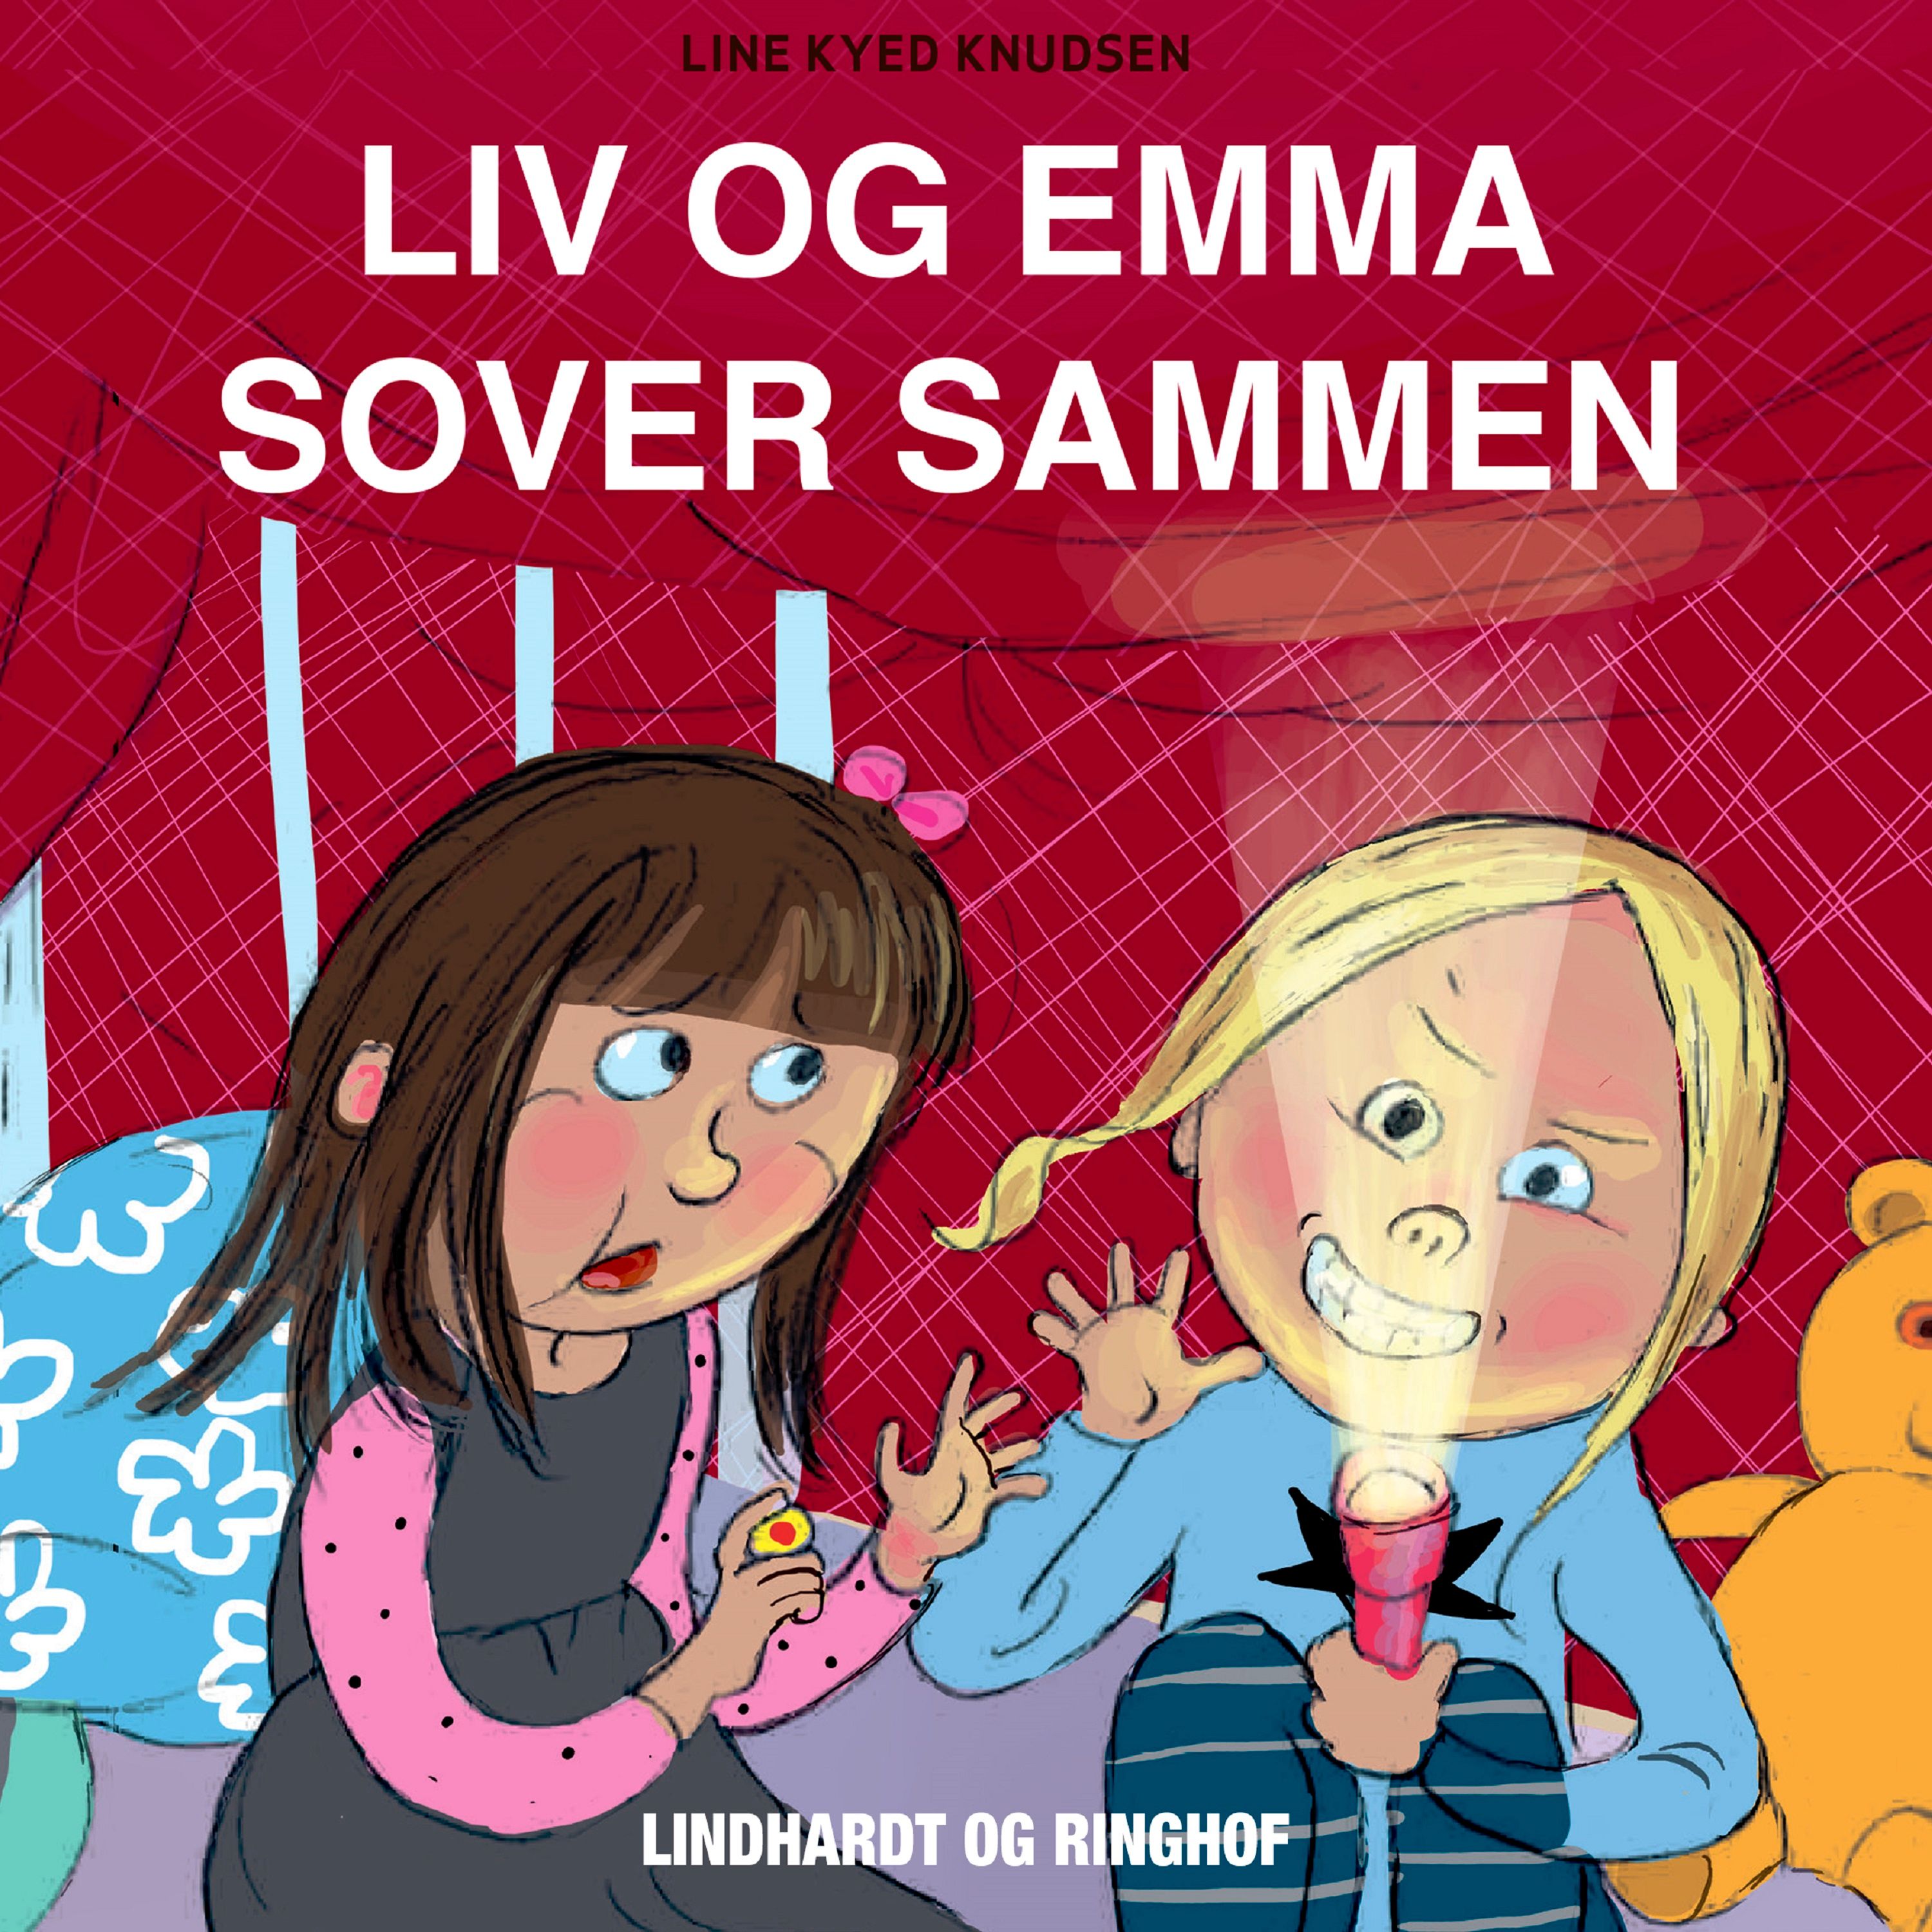 Liv og Emma sover sammen, ljudbok av Line Kyed Knudsen